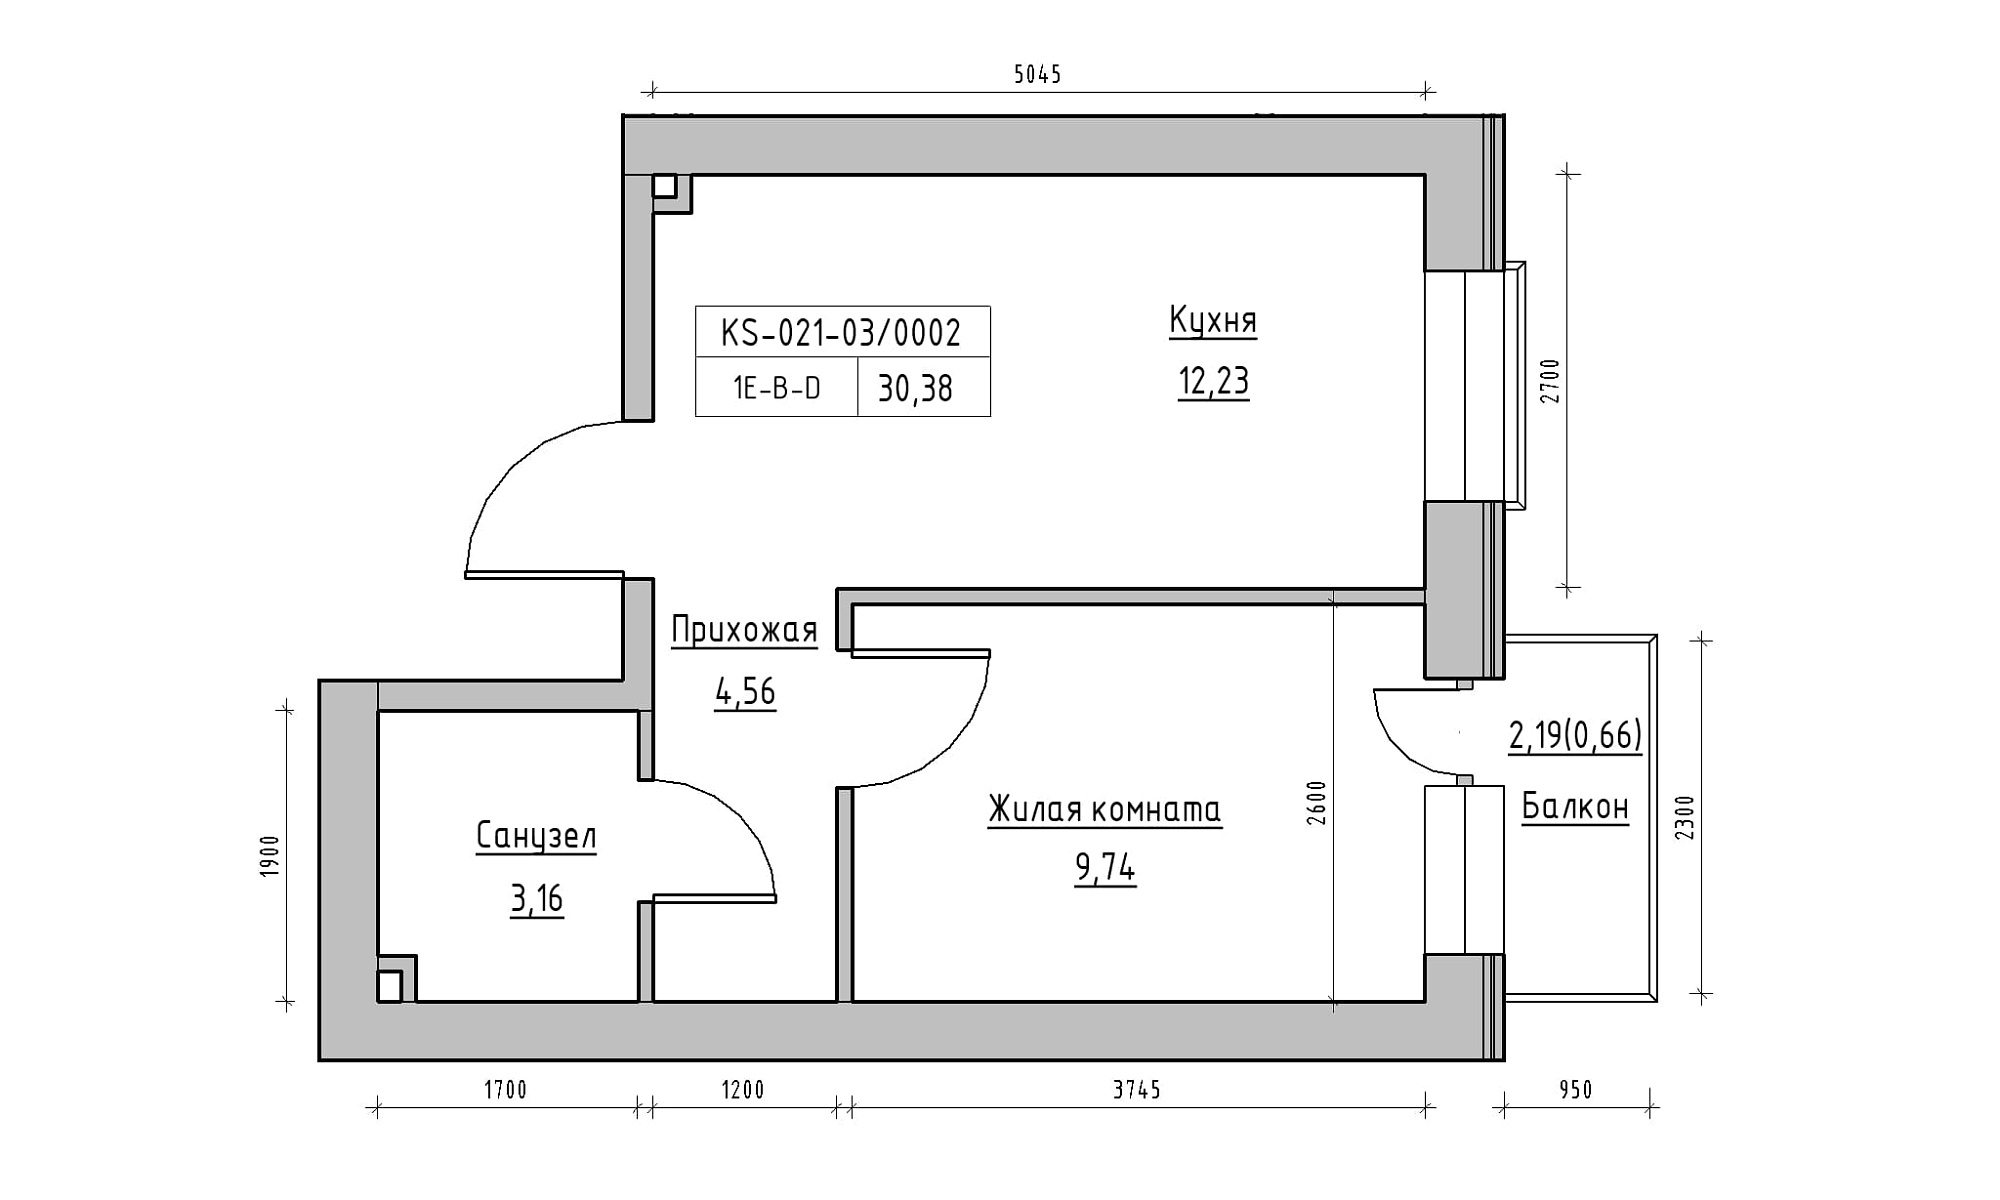 Планировка 1-к квартира площей 30.38м2, KS-021-03/0002.